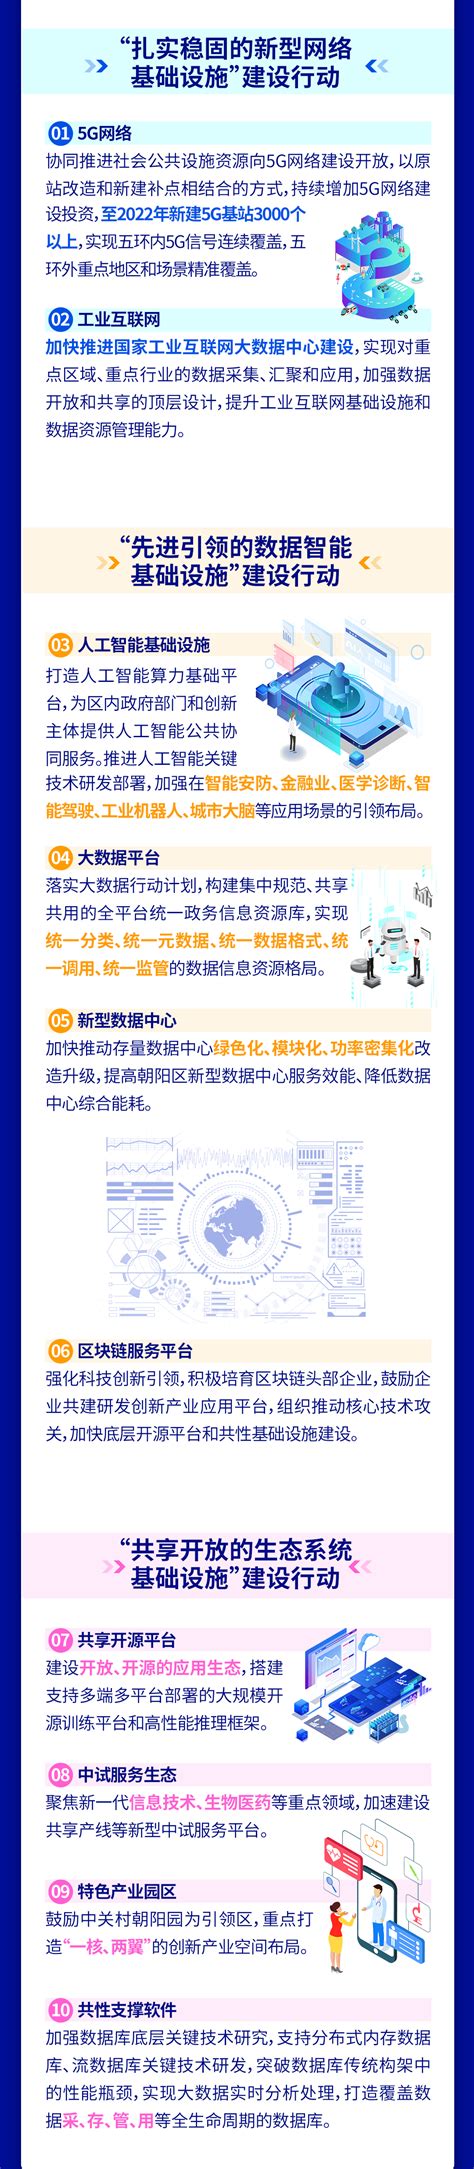 北京市朝阳区人民政府办公室关于印发北京市朝阳区知识产权运营服务体系建设实施方案（2020—2023年）的通知